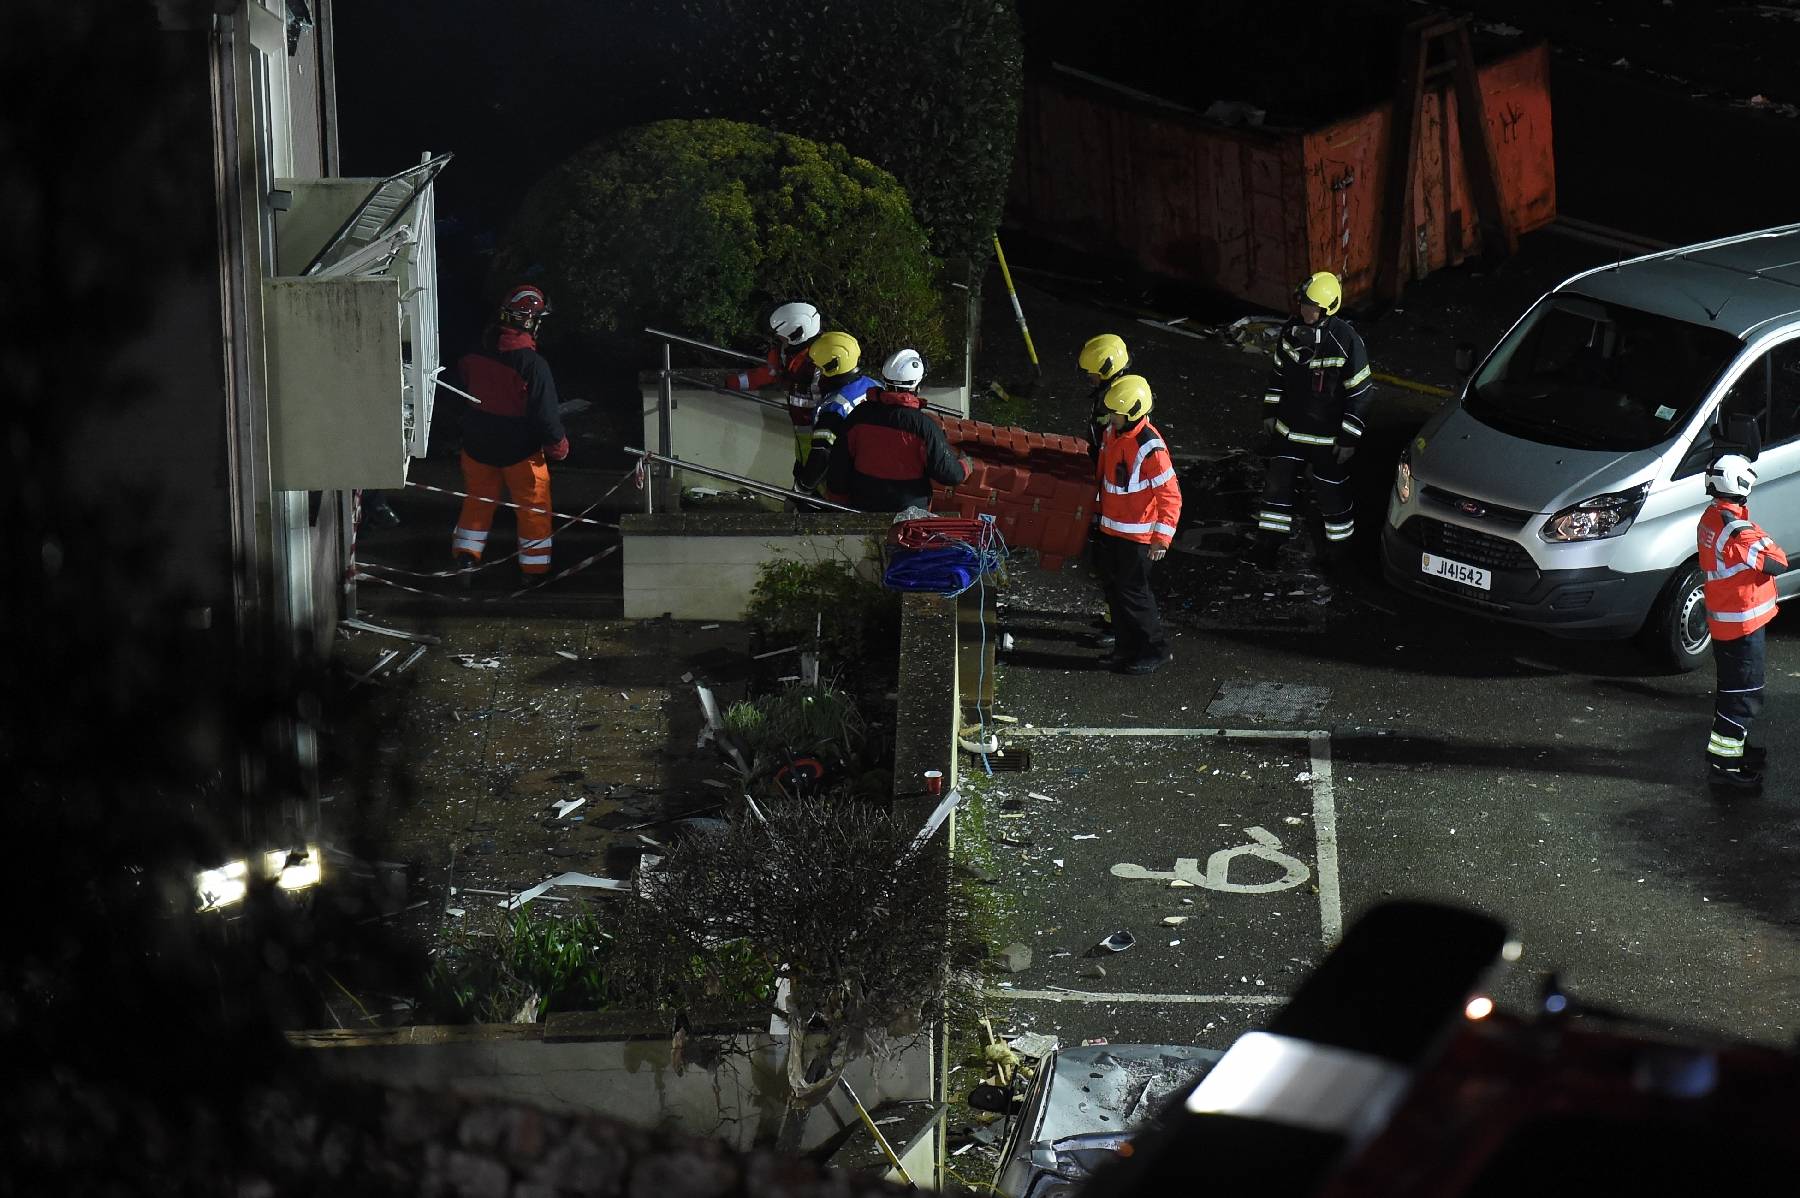 Explosion à Jersey: pas de survivants sous les décombres, selon les secouristes